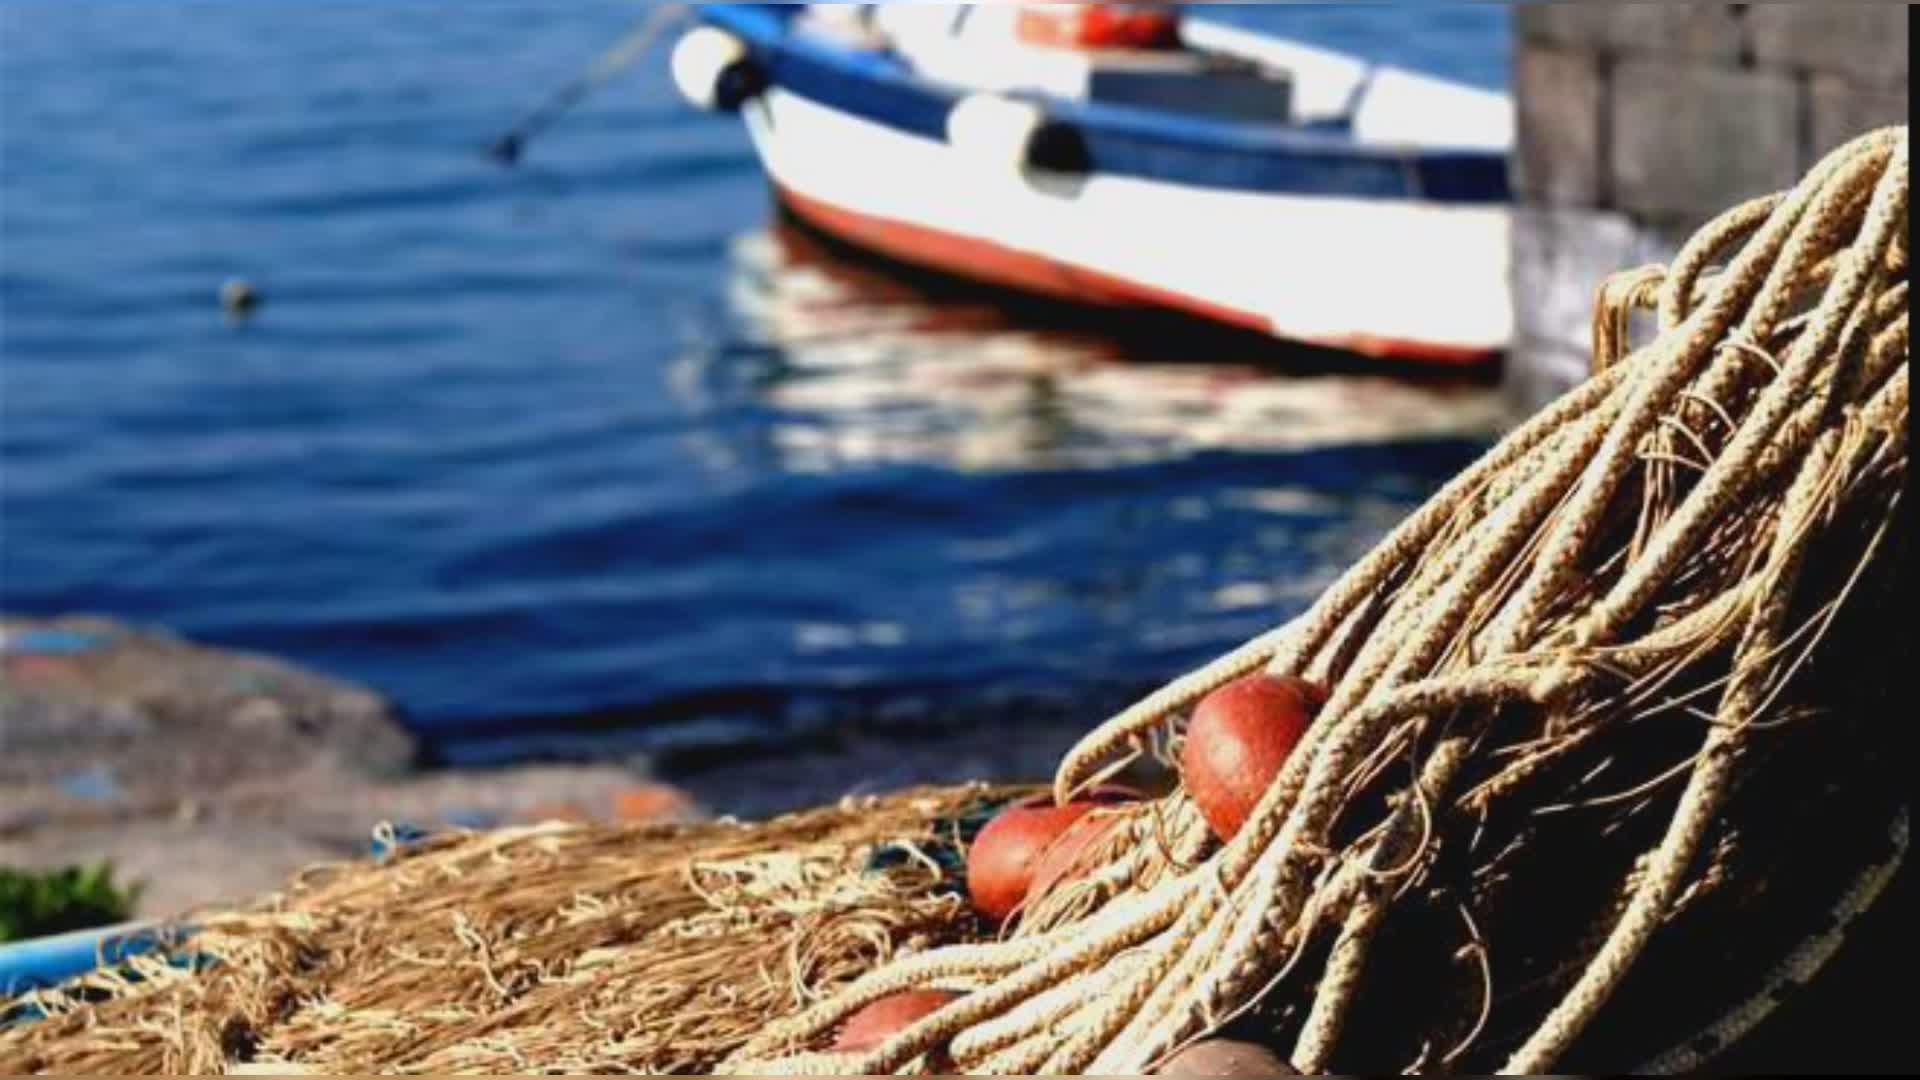 Sestri Levante: crisi pesca, pescherecci in demolizione, venduto il "Corsaro"